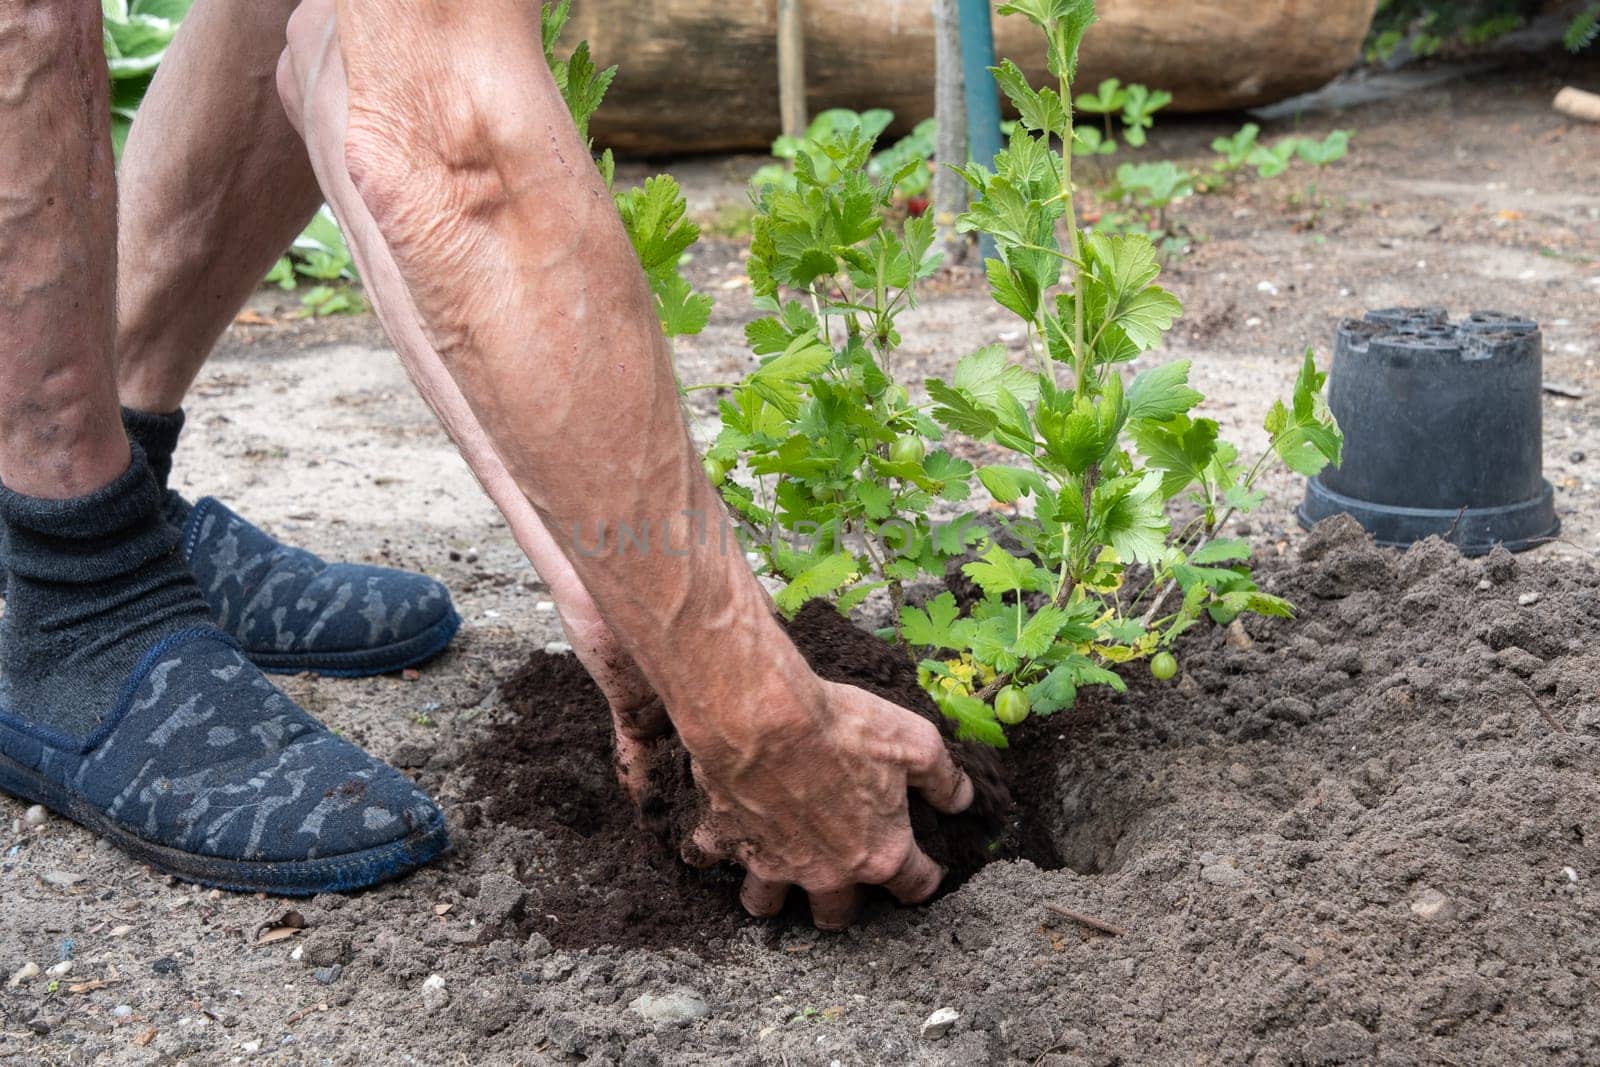 A man planted a gooseberries in his garden,spring seasonal work,gardener working by KaterinaDalemans